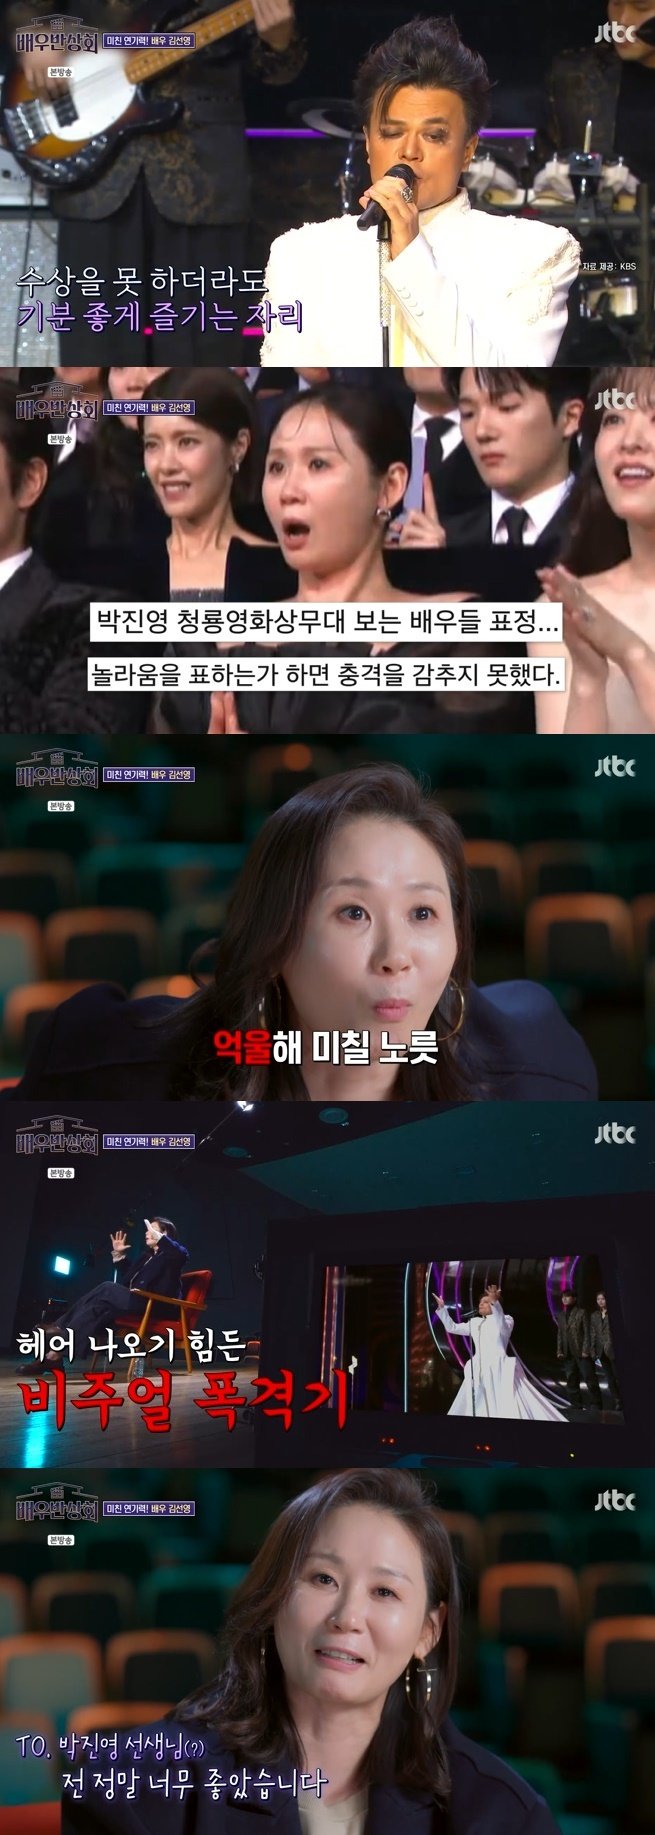 김선영, 박진영 축하무대 리액션 해명…"너무 억울해" 이유는 [RE:TV]